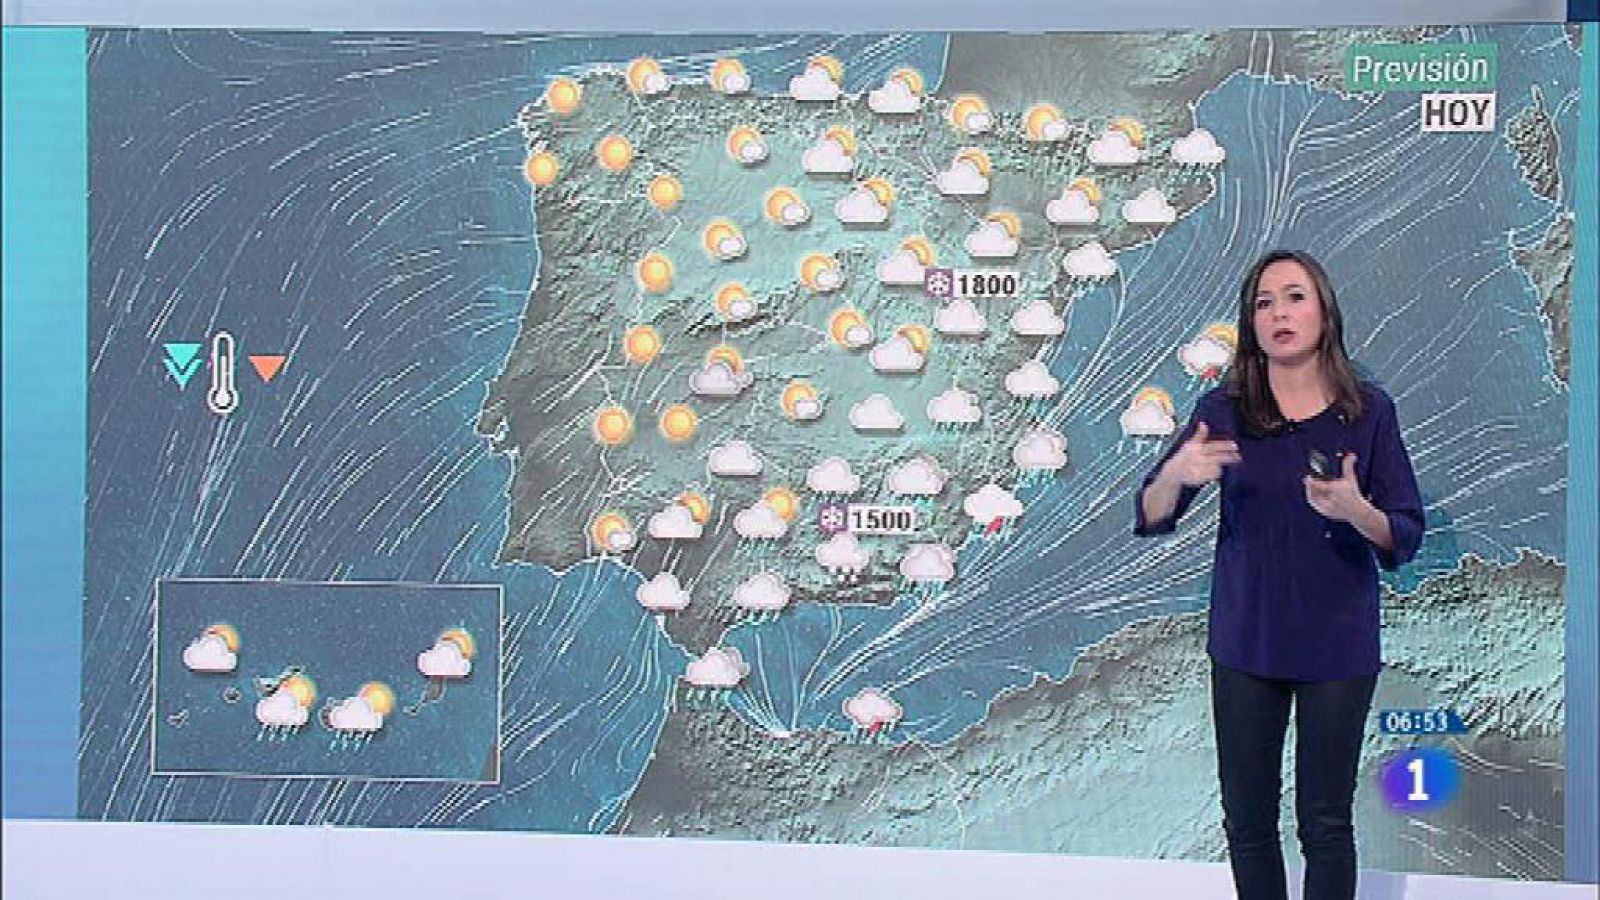 Hoy se espera una jornada de fuertes lluvias en el sureste peninsular y Baleares - RTVE.es